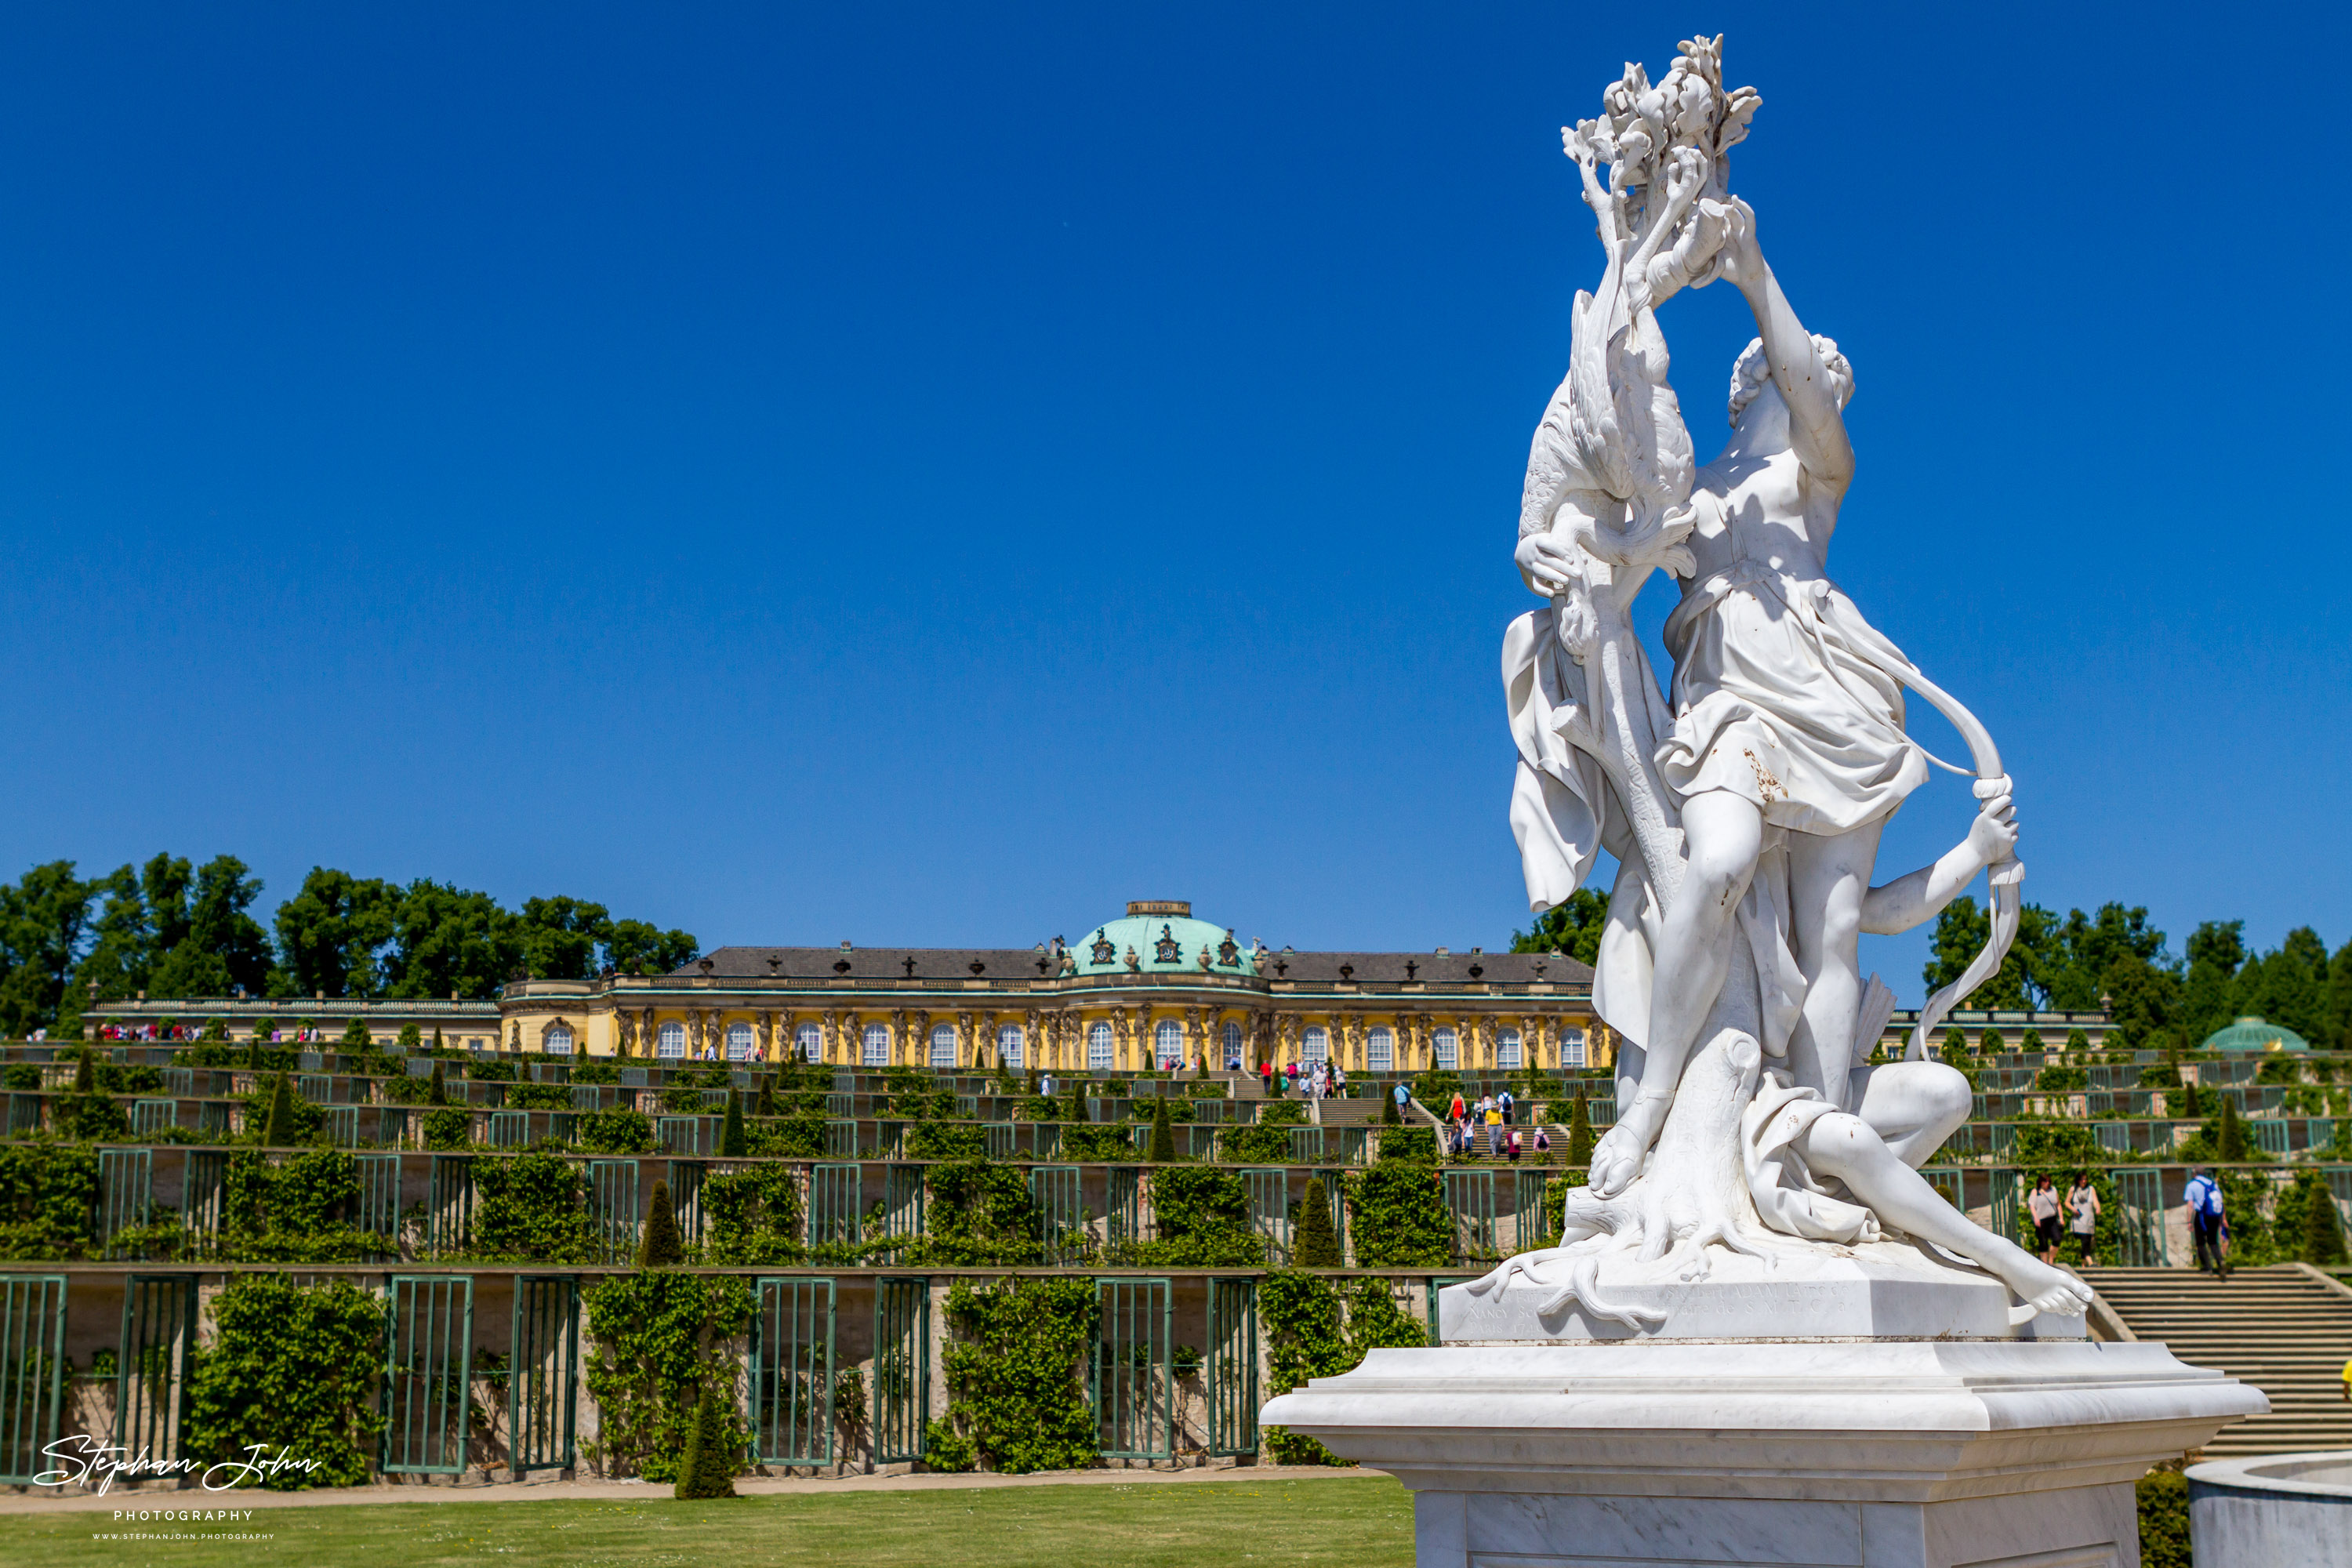 Schloss und Park Sanssouci in Potsdam